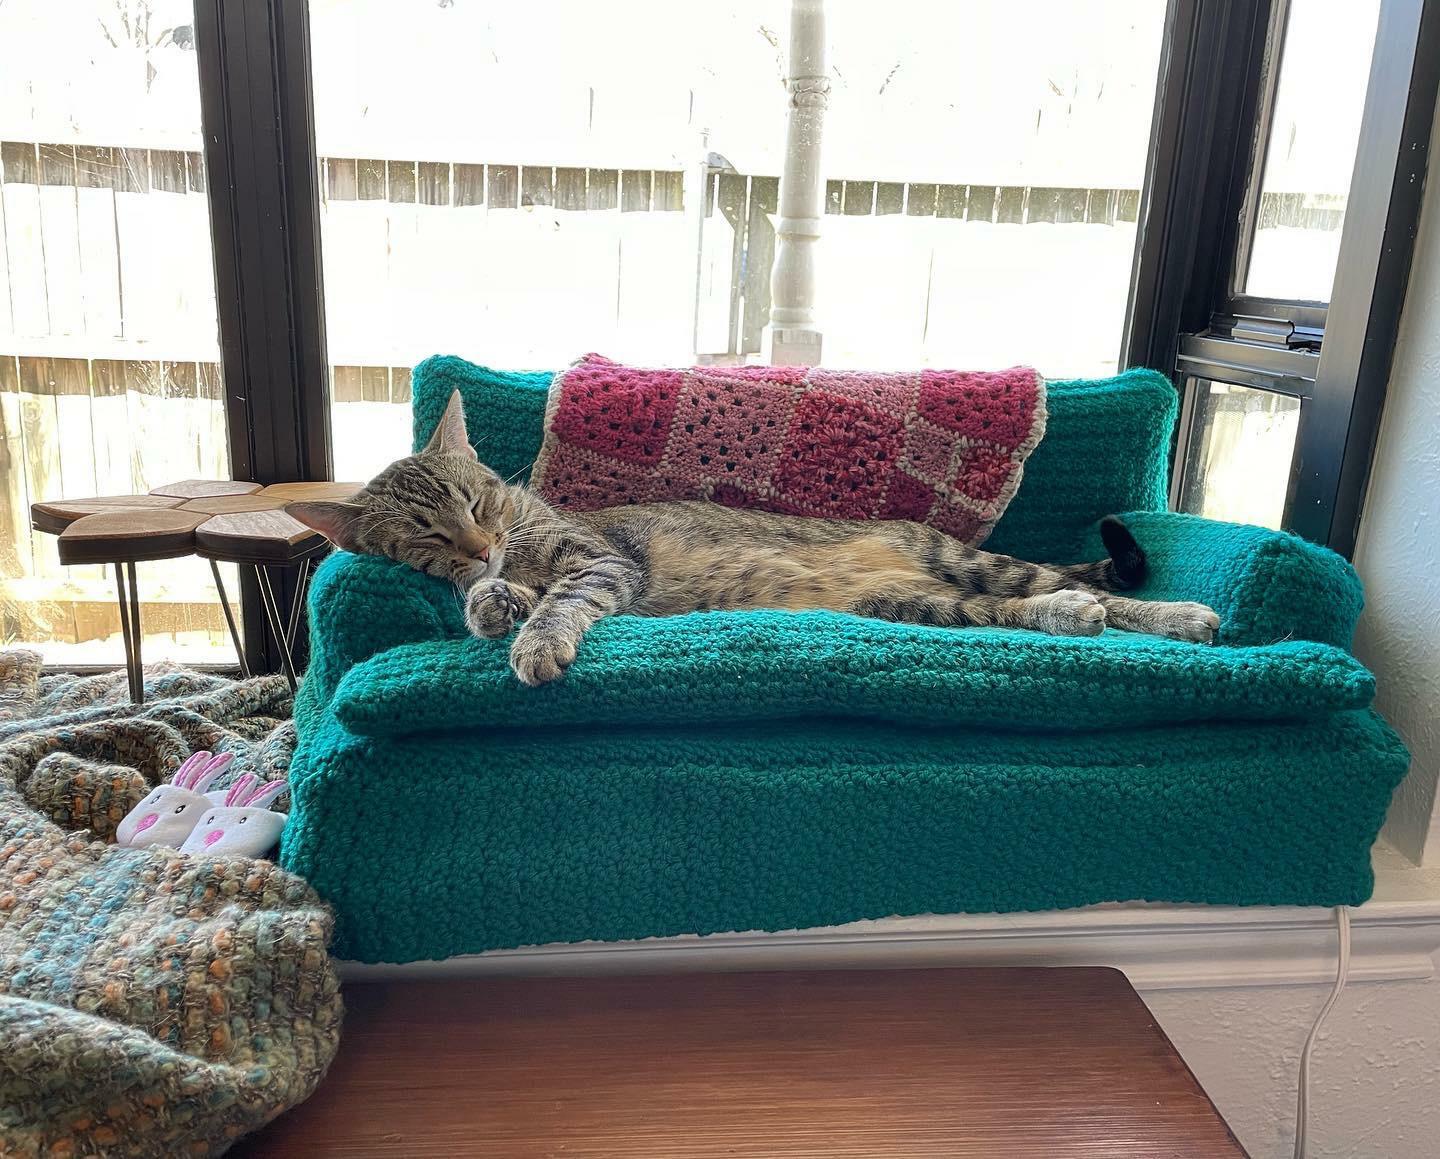 J’ai crocheté et fabriqué ce canapé chauffant pour chat, et je travaille sur un deuxième pour avoir un ensemble assorti. hi ! meet ripley :)